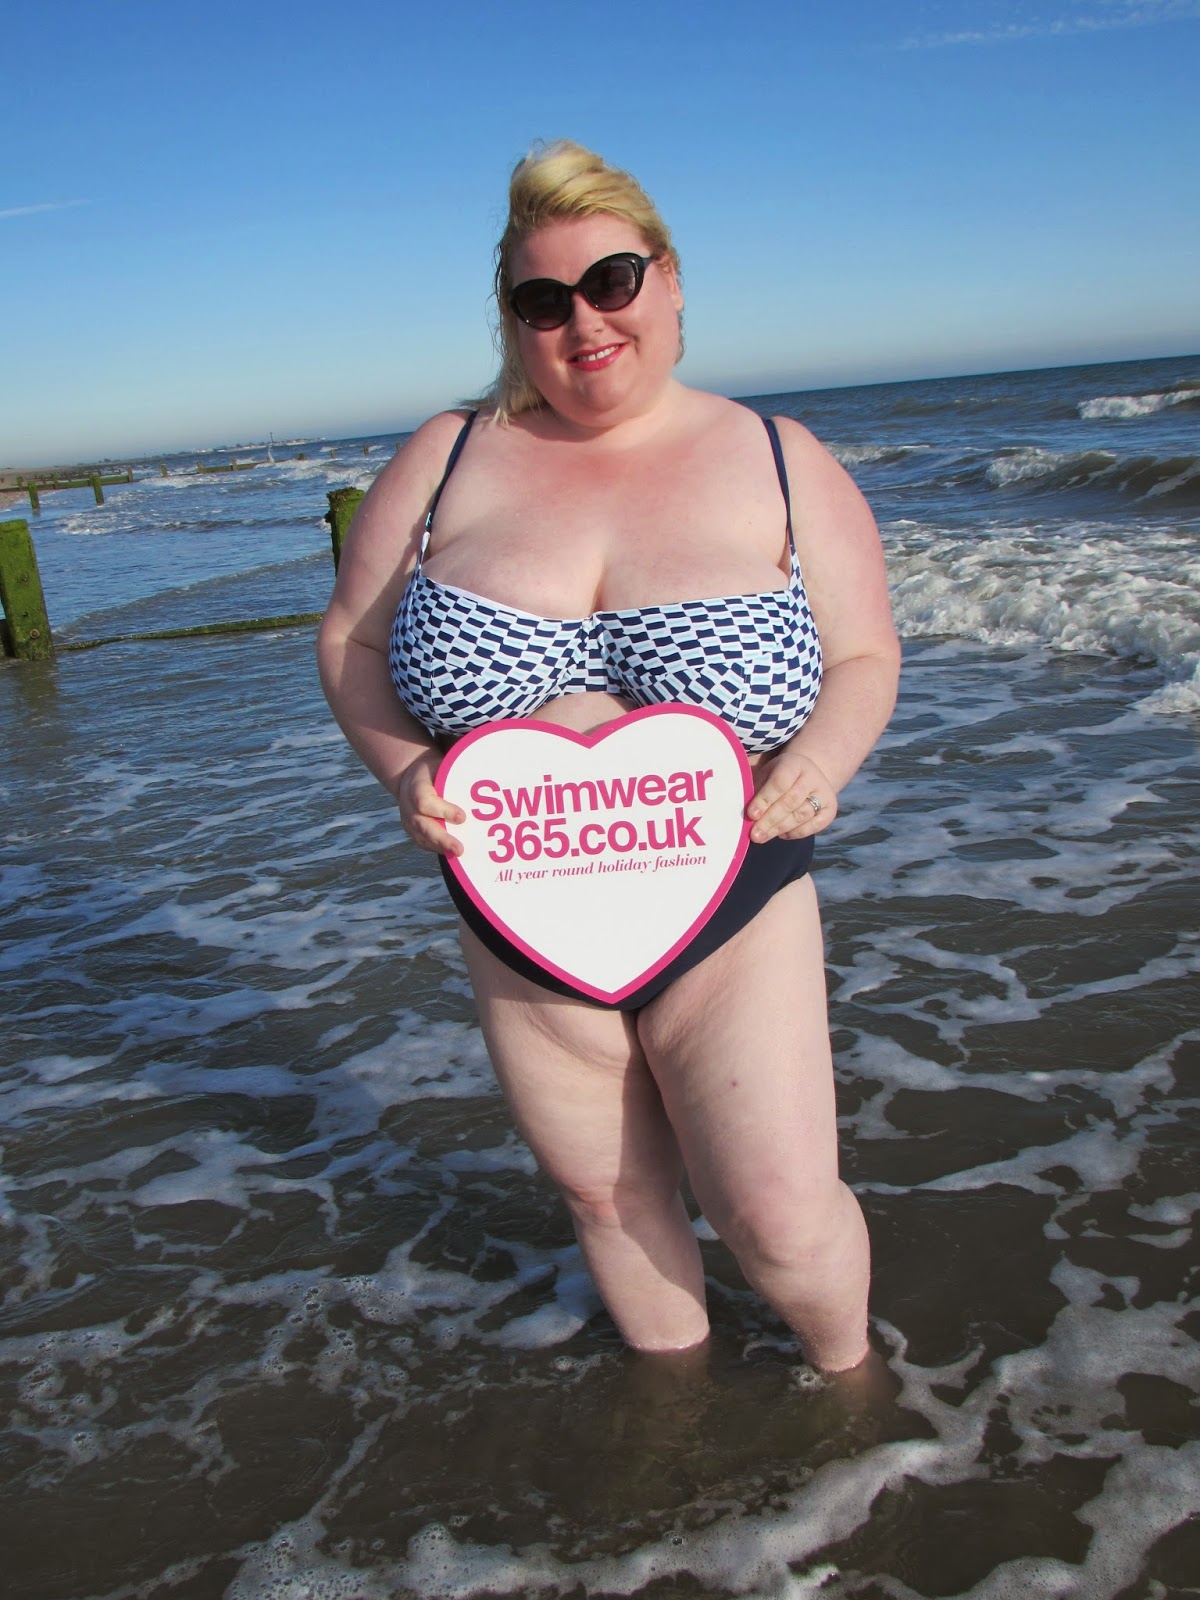 Alguien recuerda el famoso hilo del Carapadre y su novia en topless en la playa?